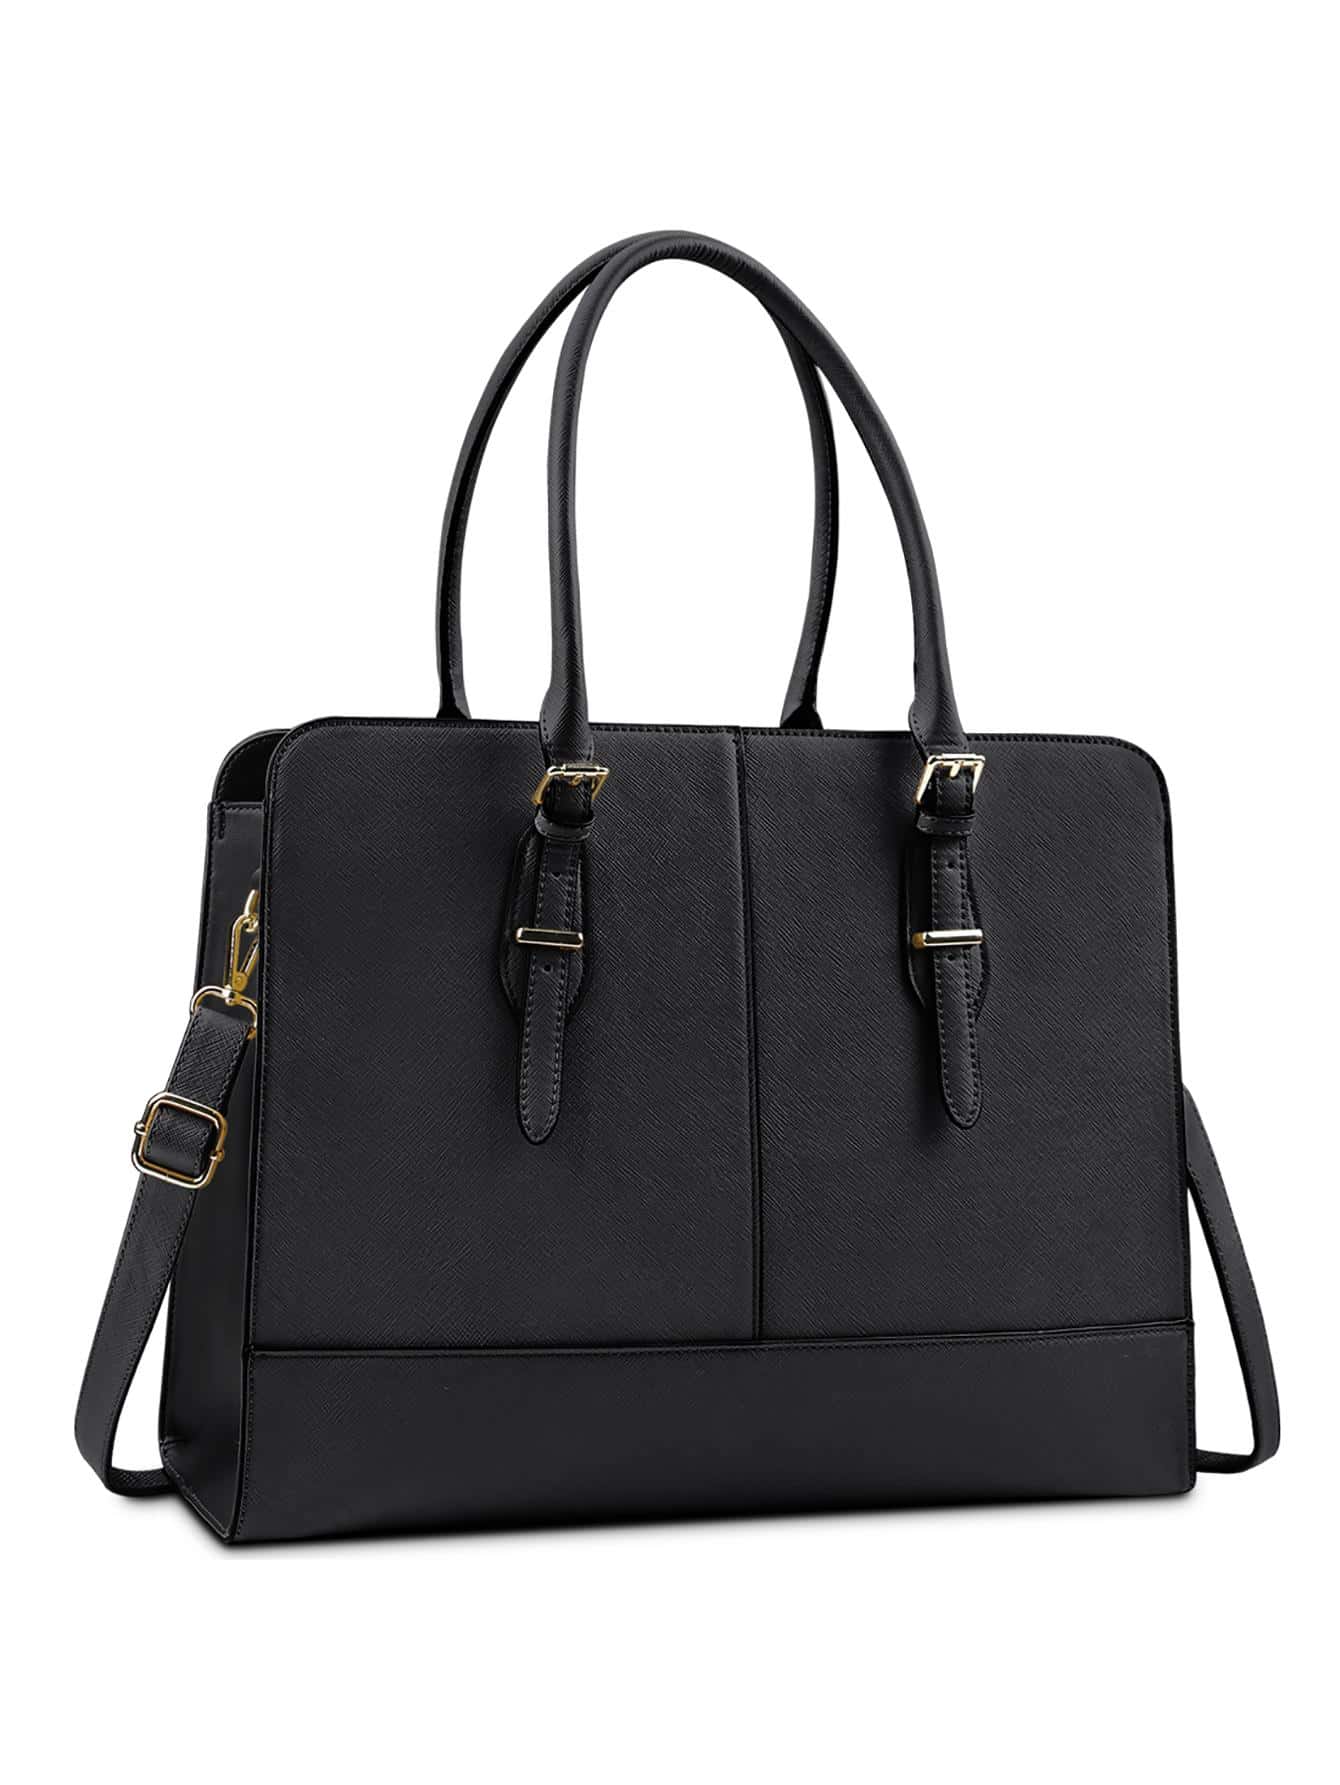 Женская кожаная сумка для ноутбука, черный женский кожаный портфель oyixinger деловая сумка через плечо для ноутбука 13 дюймов macbook hp acer dell модная женская сумка с верхней ручкой